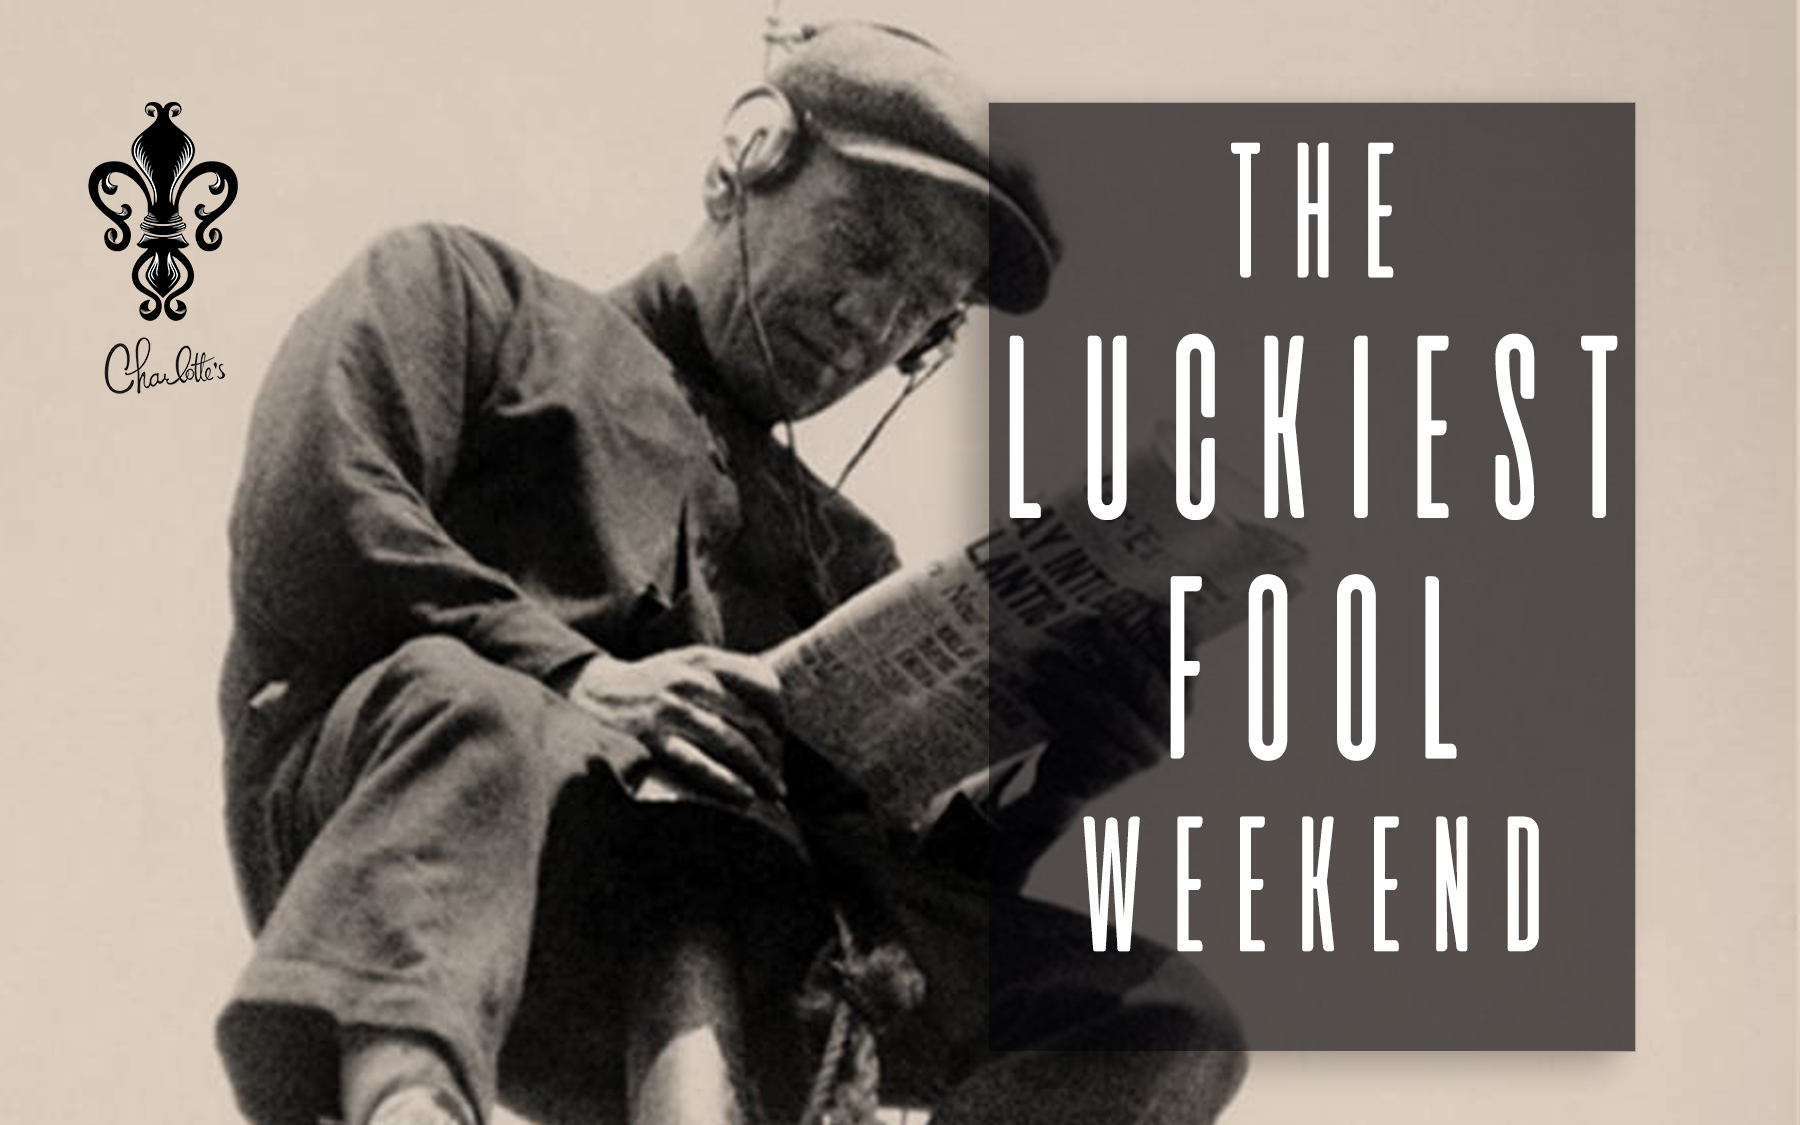 The Luckiest Fool Weekend